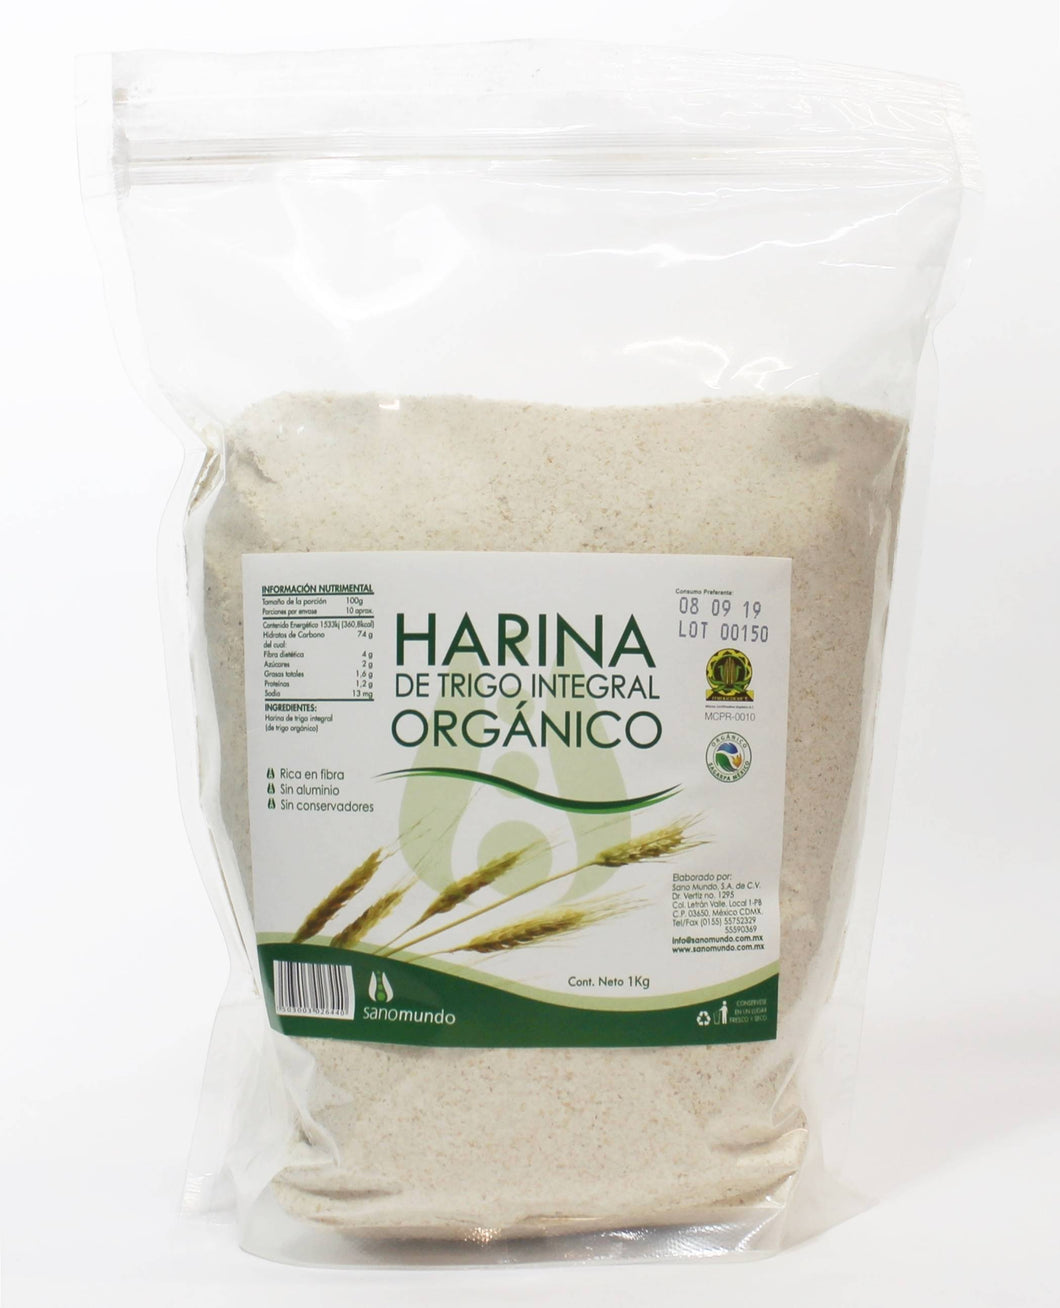 Harina de trigo integral orgánica